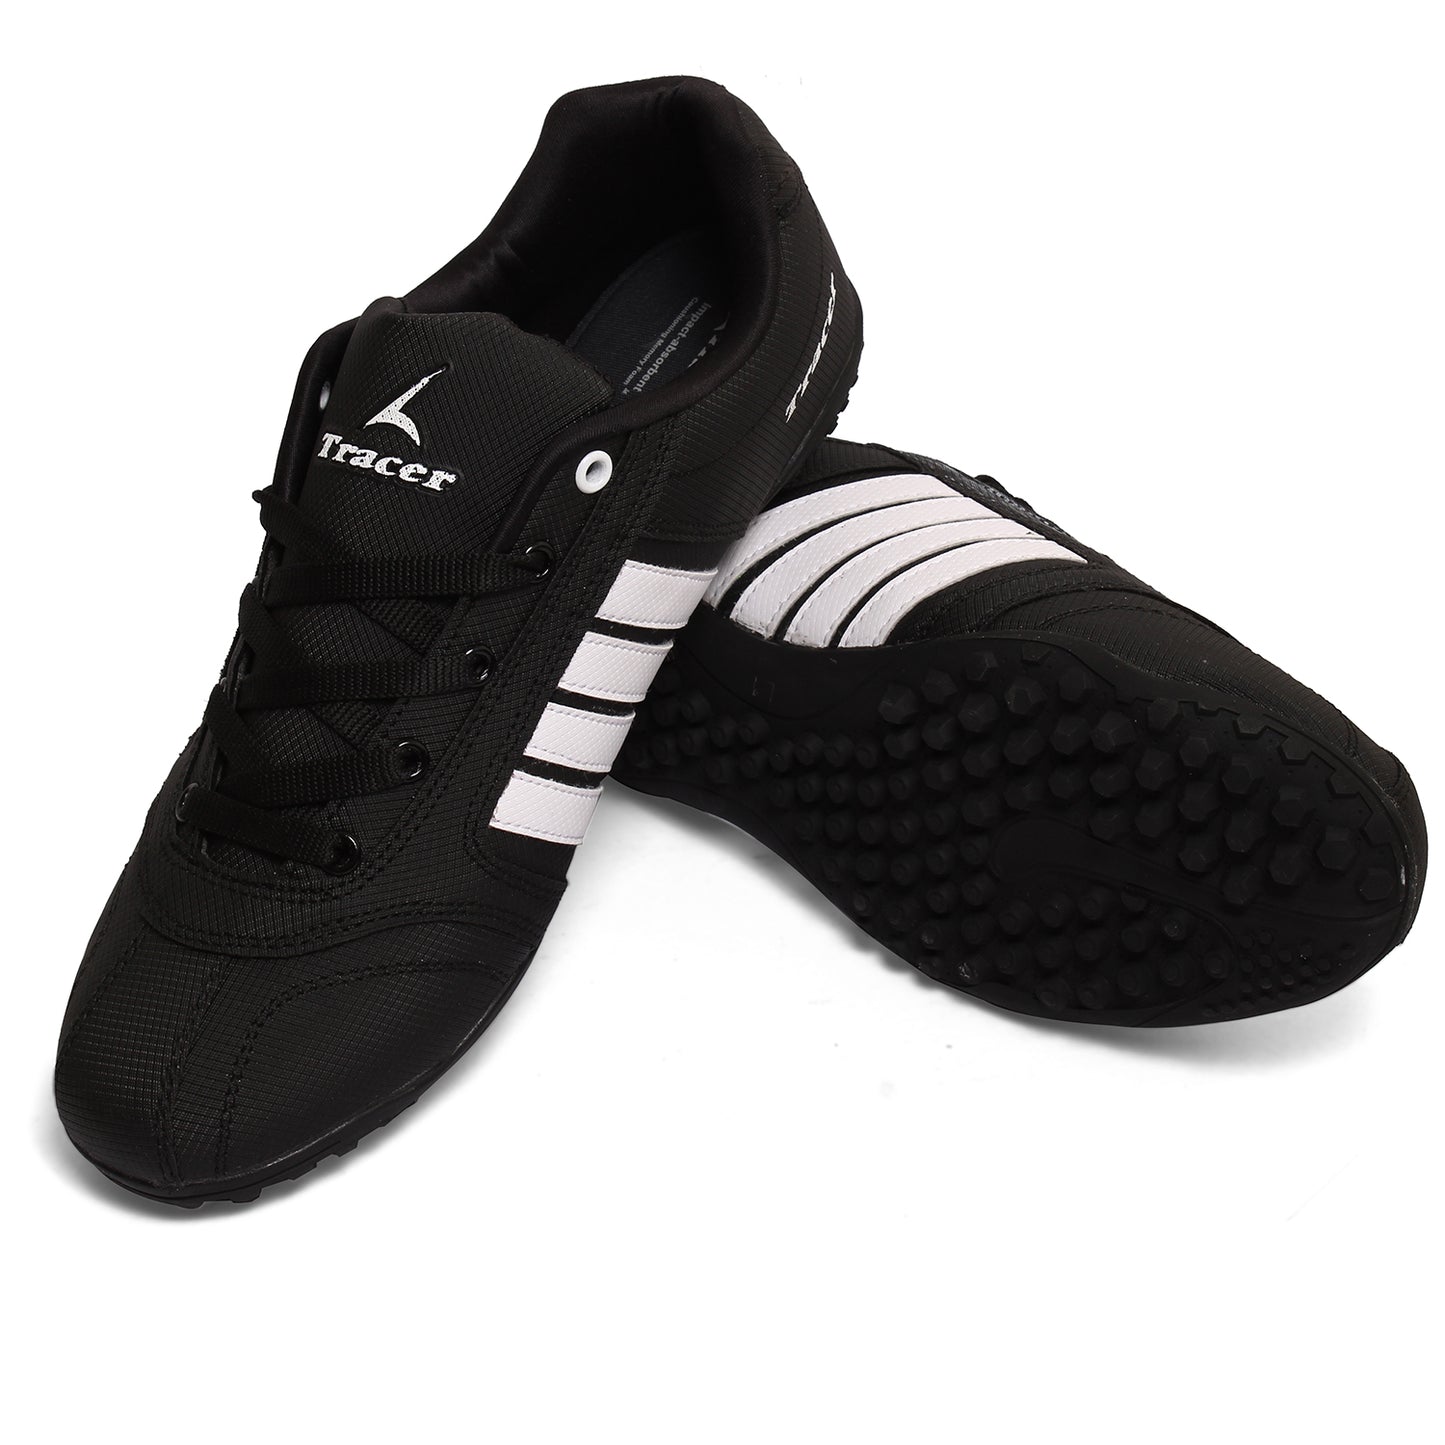 Men's Sports Shoes Black